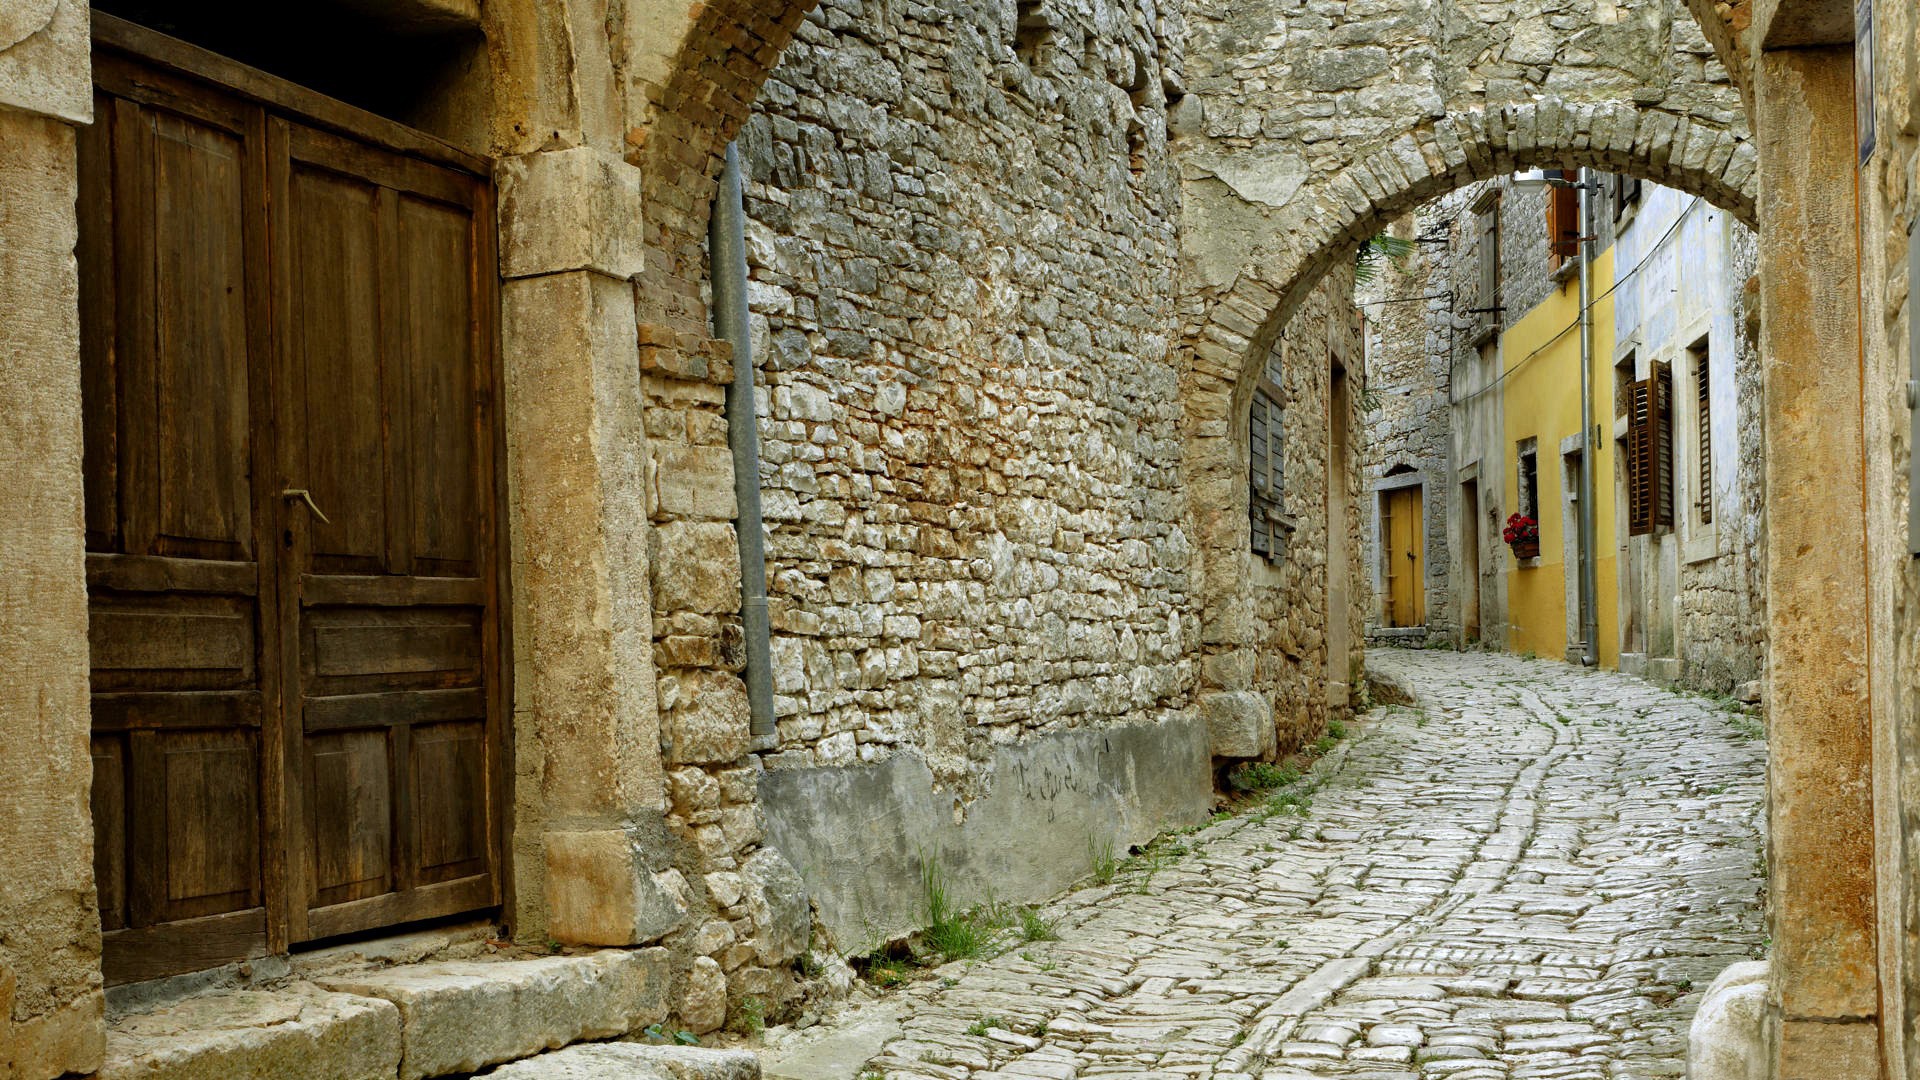 Иерусалим старый город улочки